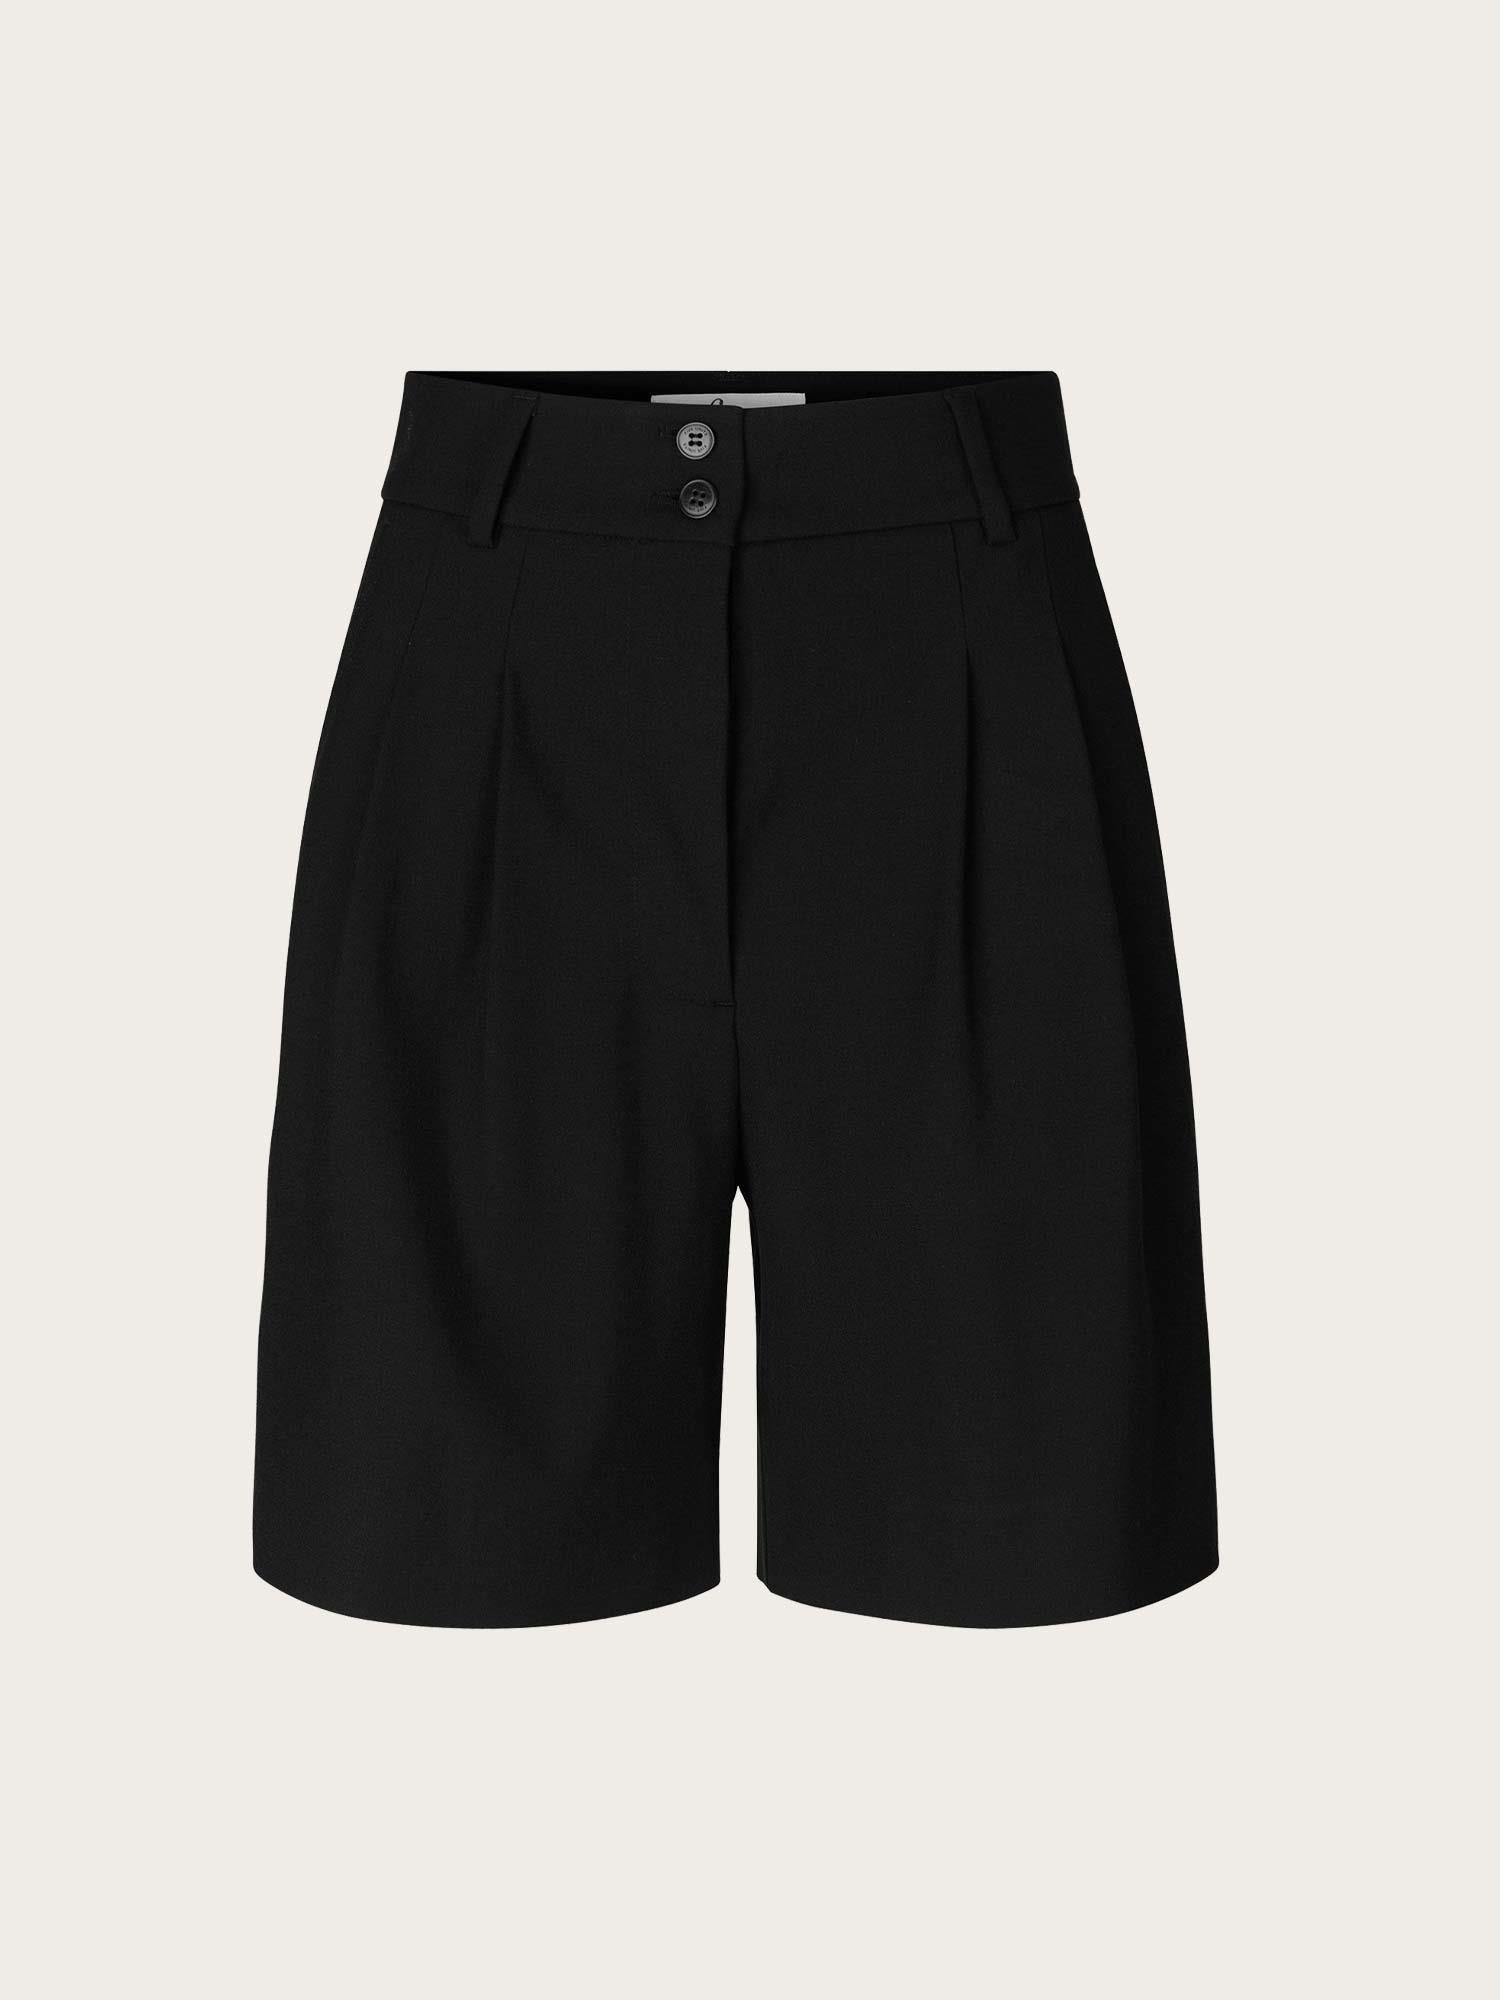 KarenFV Shorts 396 - Black